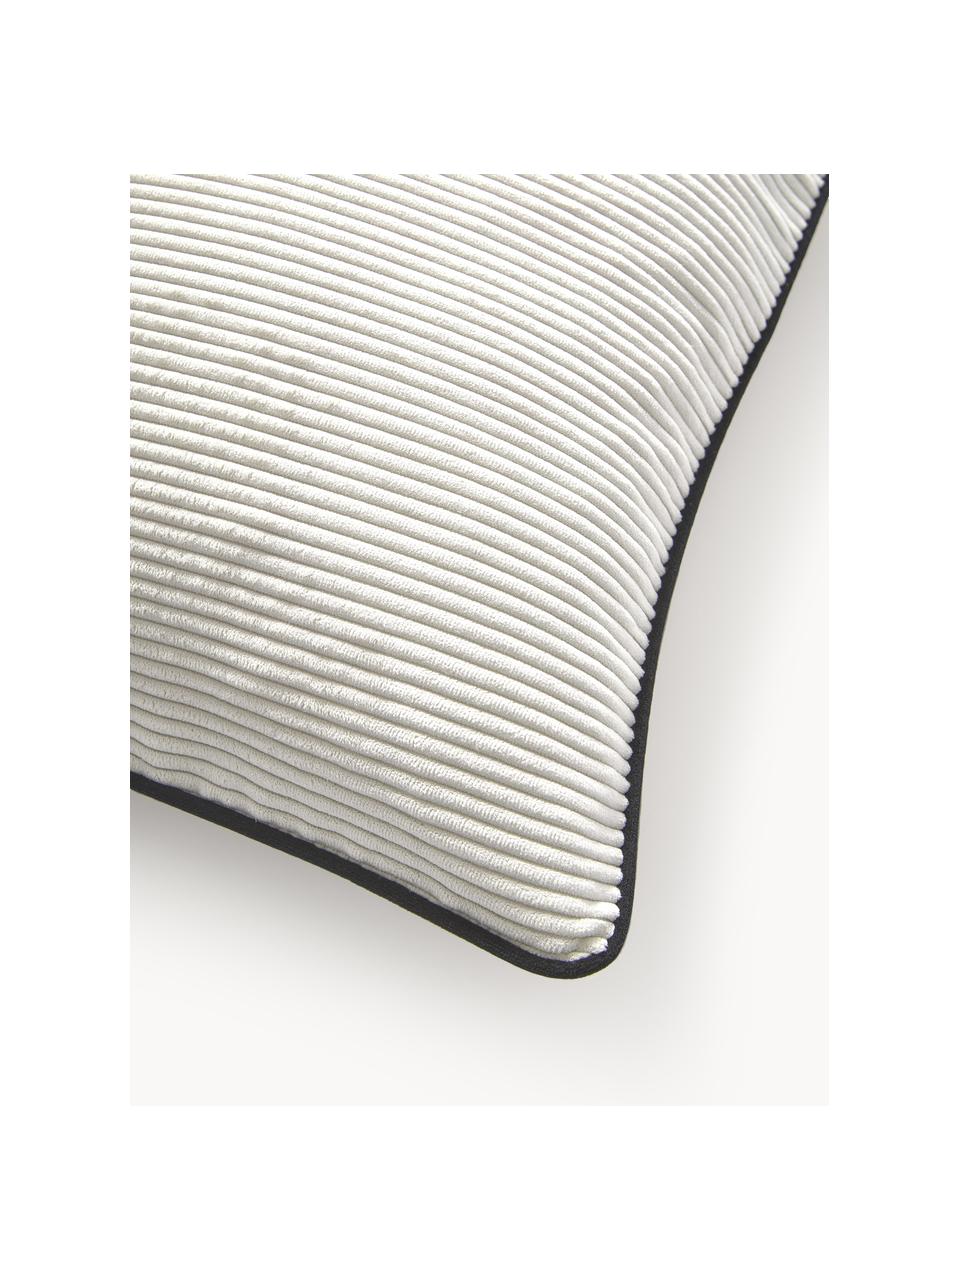 Geweven fluwelen kussenhoezen Carter met gestructureerde oppervlak, 2 stuks, 88% polyester, 12% nylon, Gebroken wit, zwart, B 45 x L 45 cm